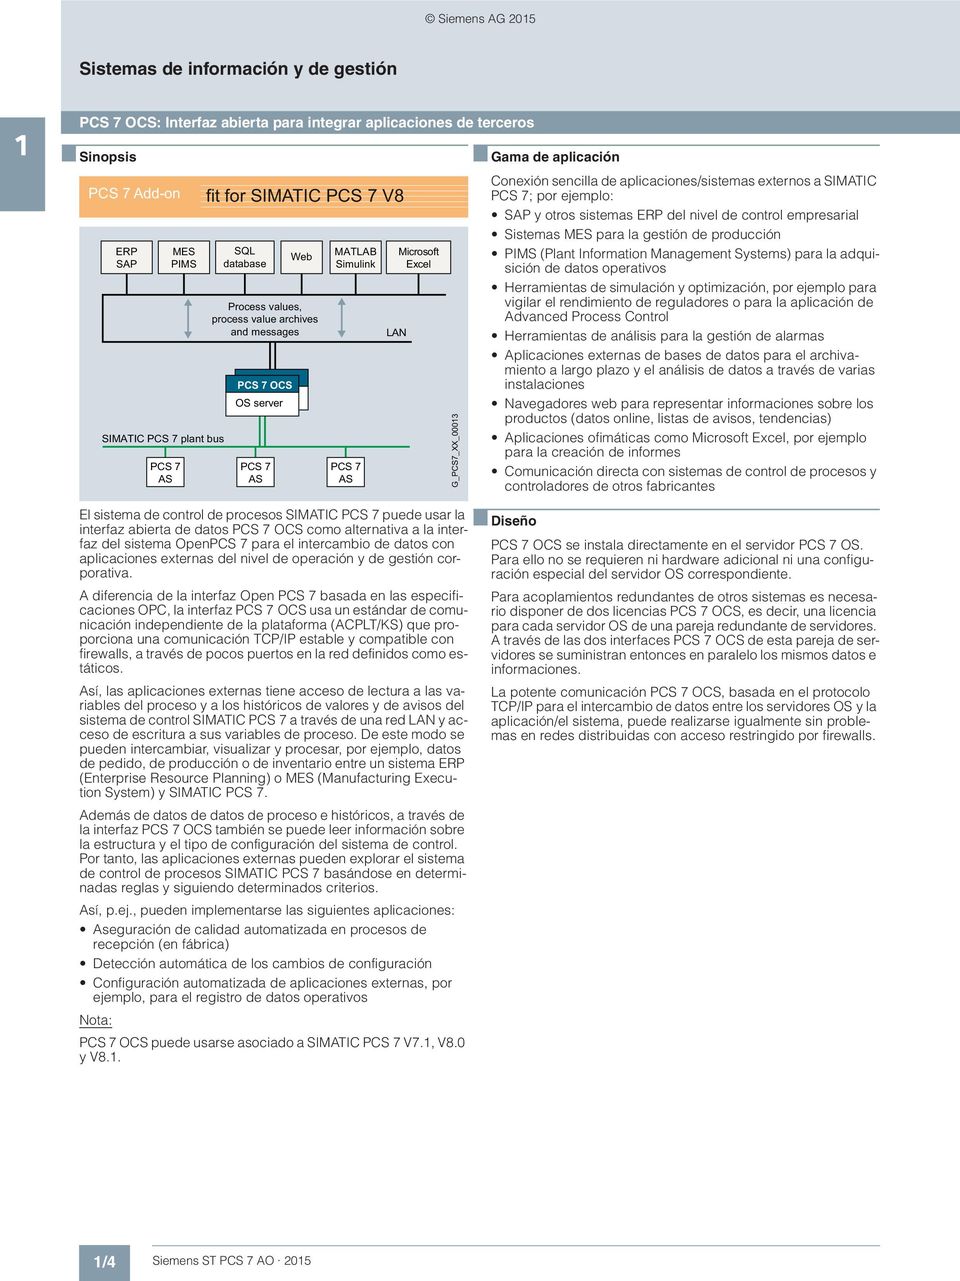 sencilla de aplicaciones/sistemas externos a SIMATIC PCS 7; por ejemplo: SAP y otros sistemas ERP del nivel de control empresarial Sistemas MES para la gestión de producción PIMS (Plant Information